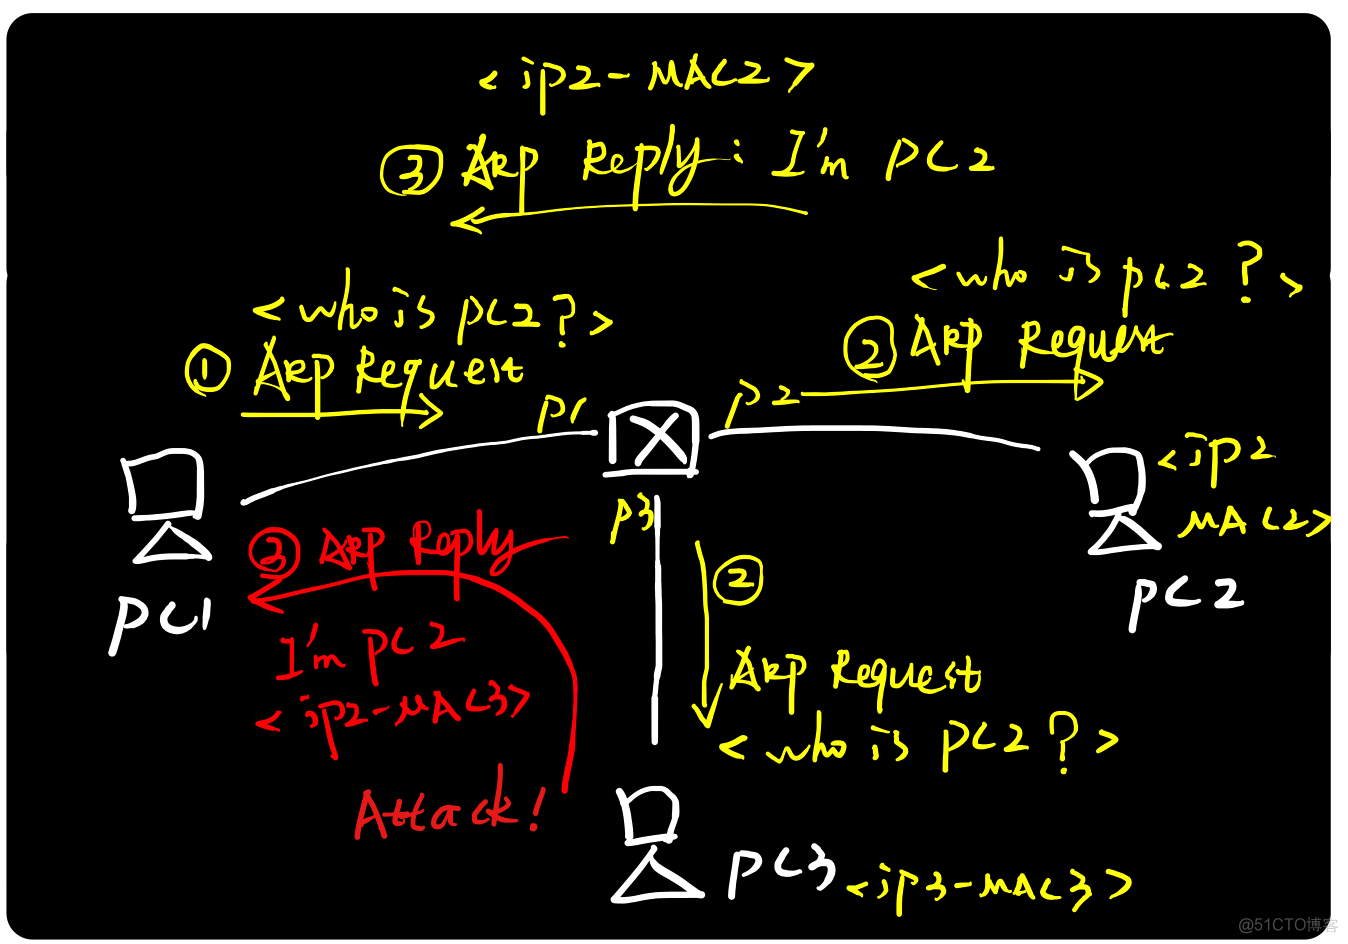 图解ARP协议（二）ARP***原理与实践_ARP_03